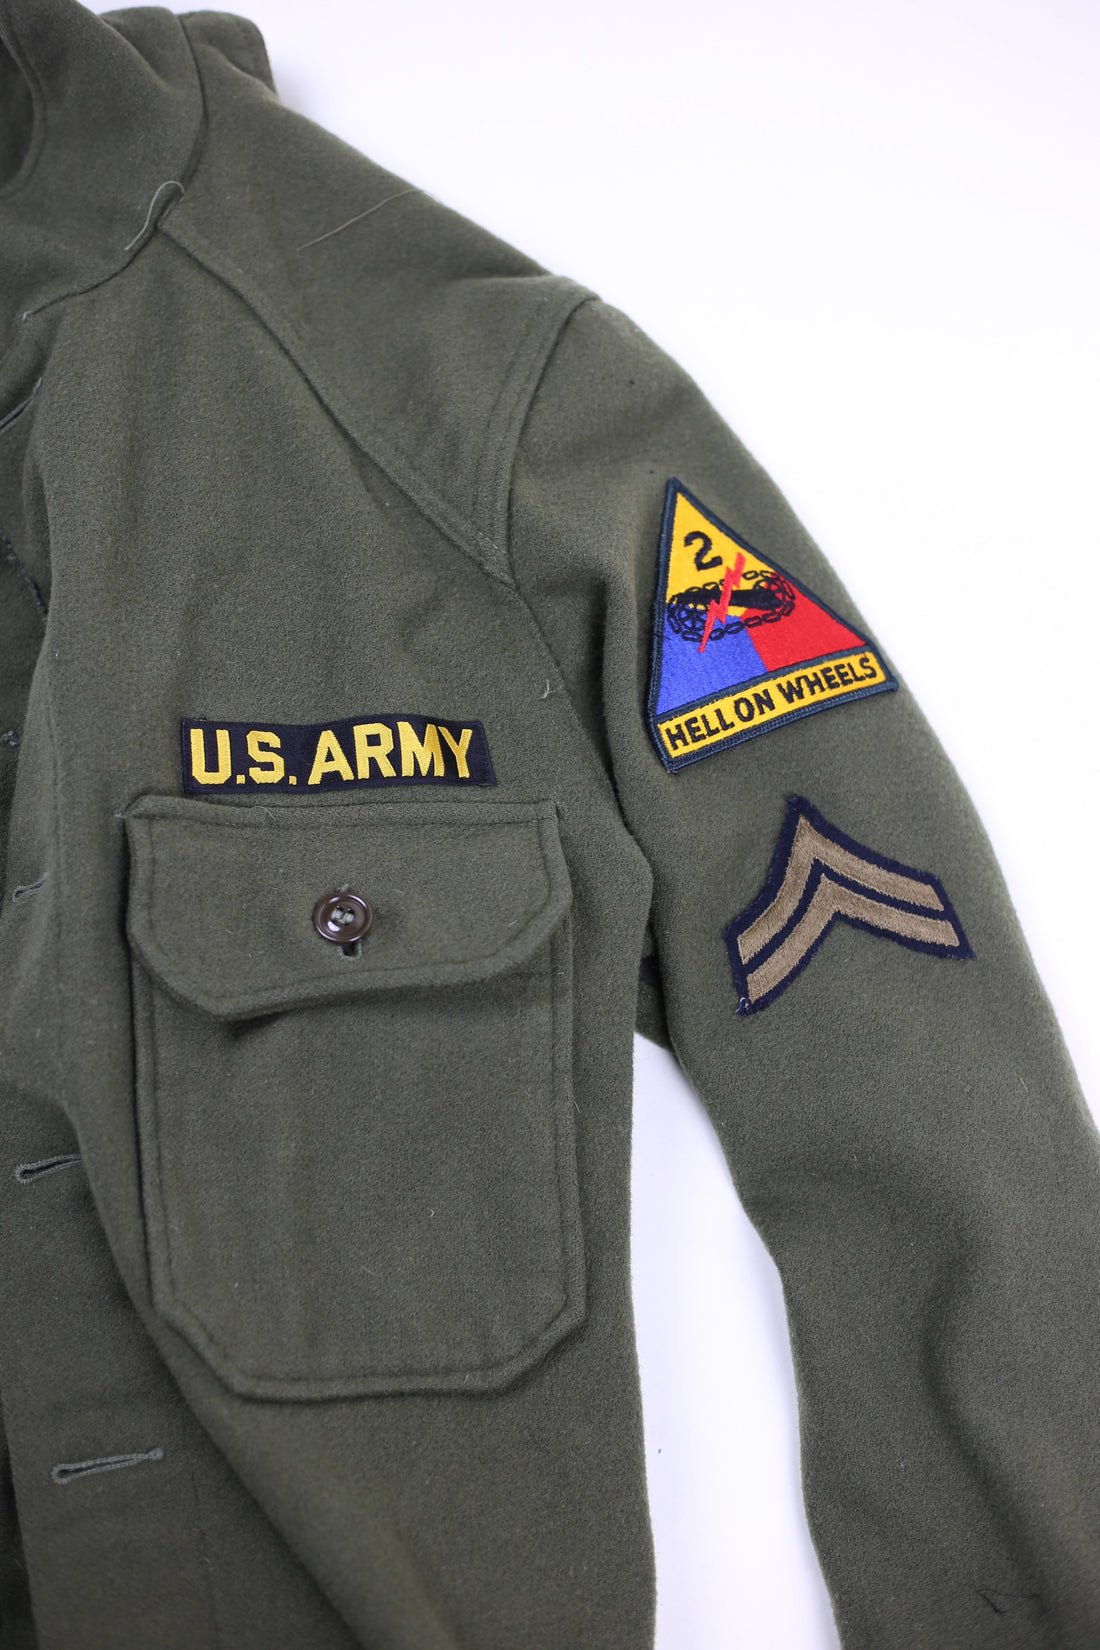 Camicia Og 108 US Army Korea era 1950s - L -